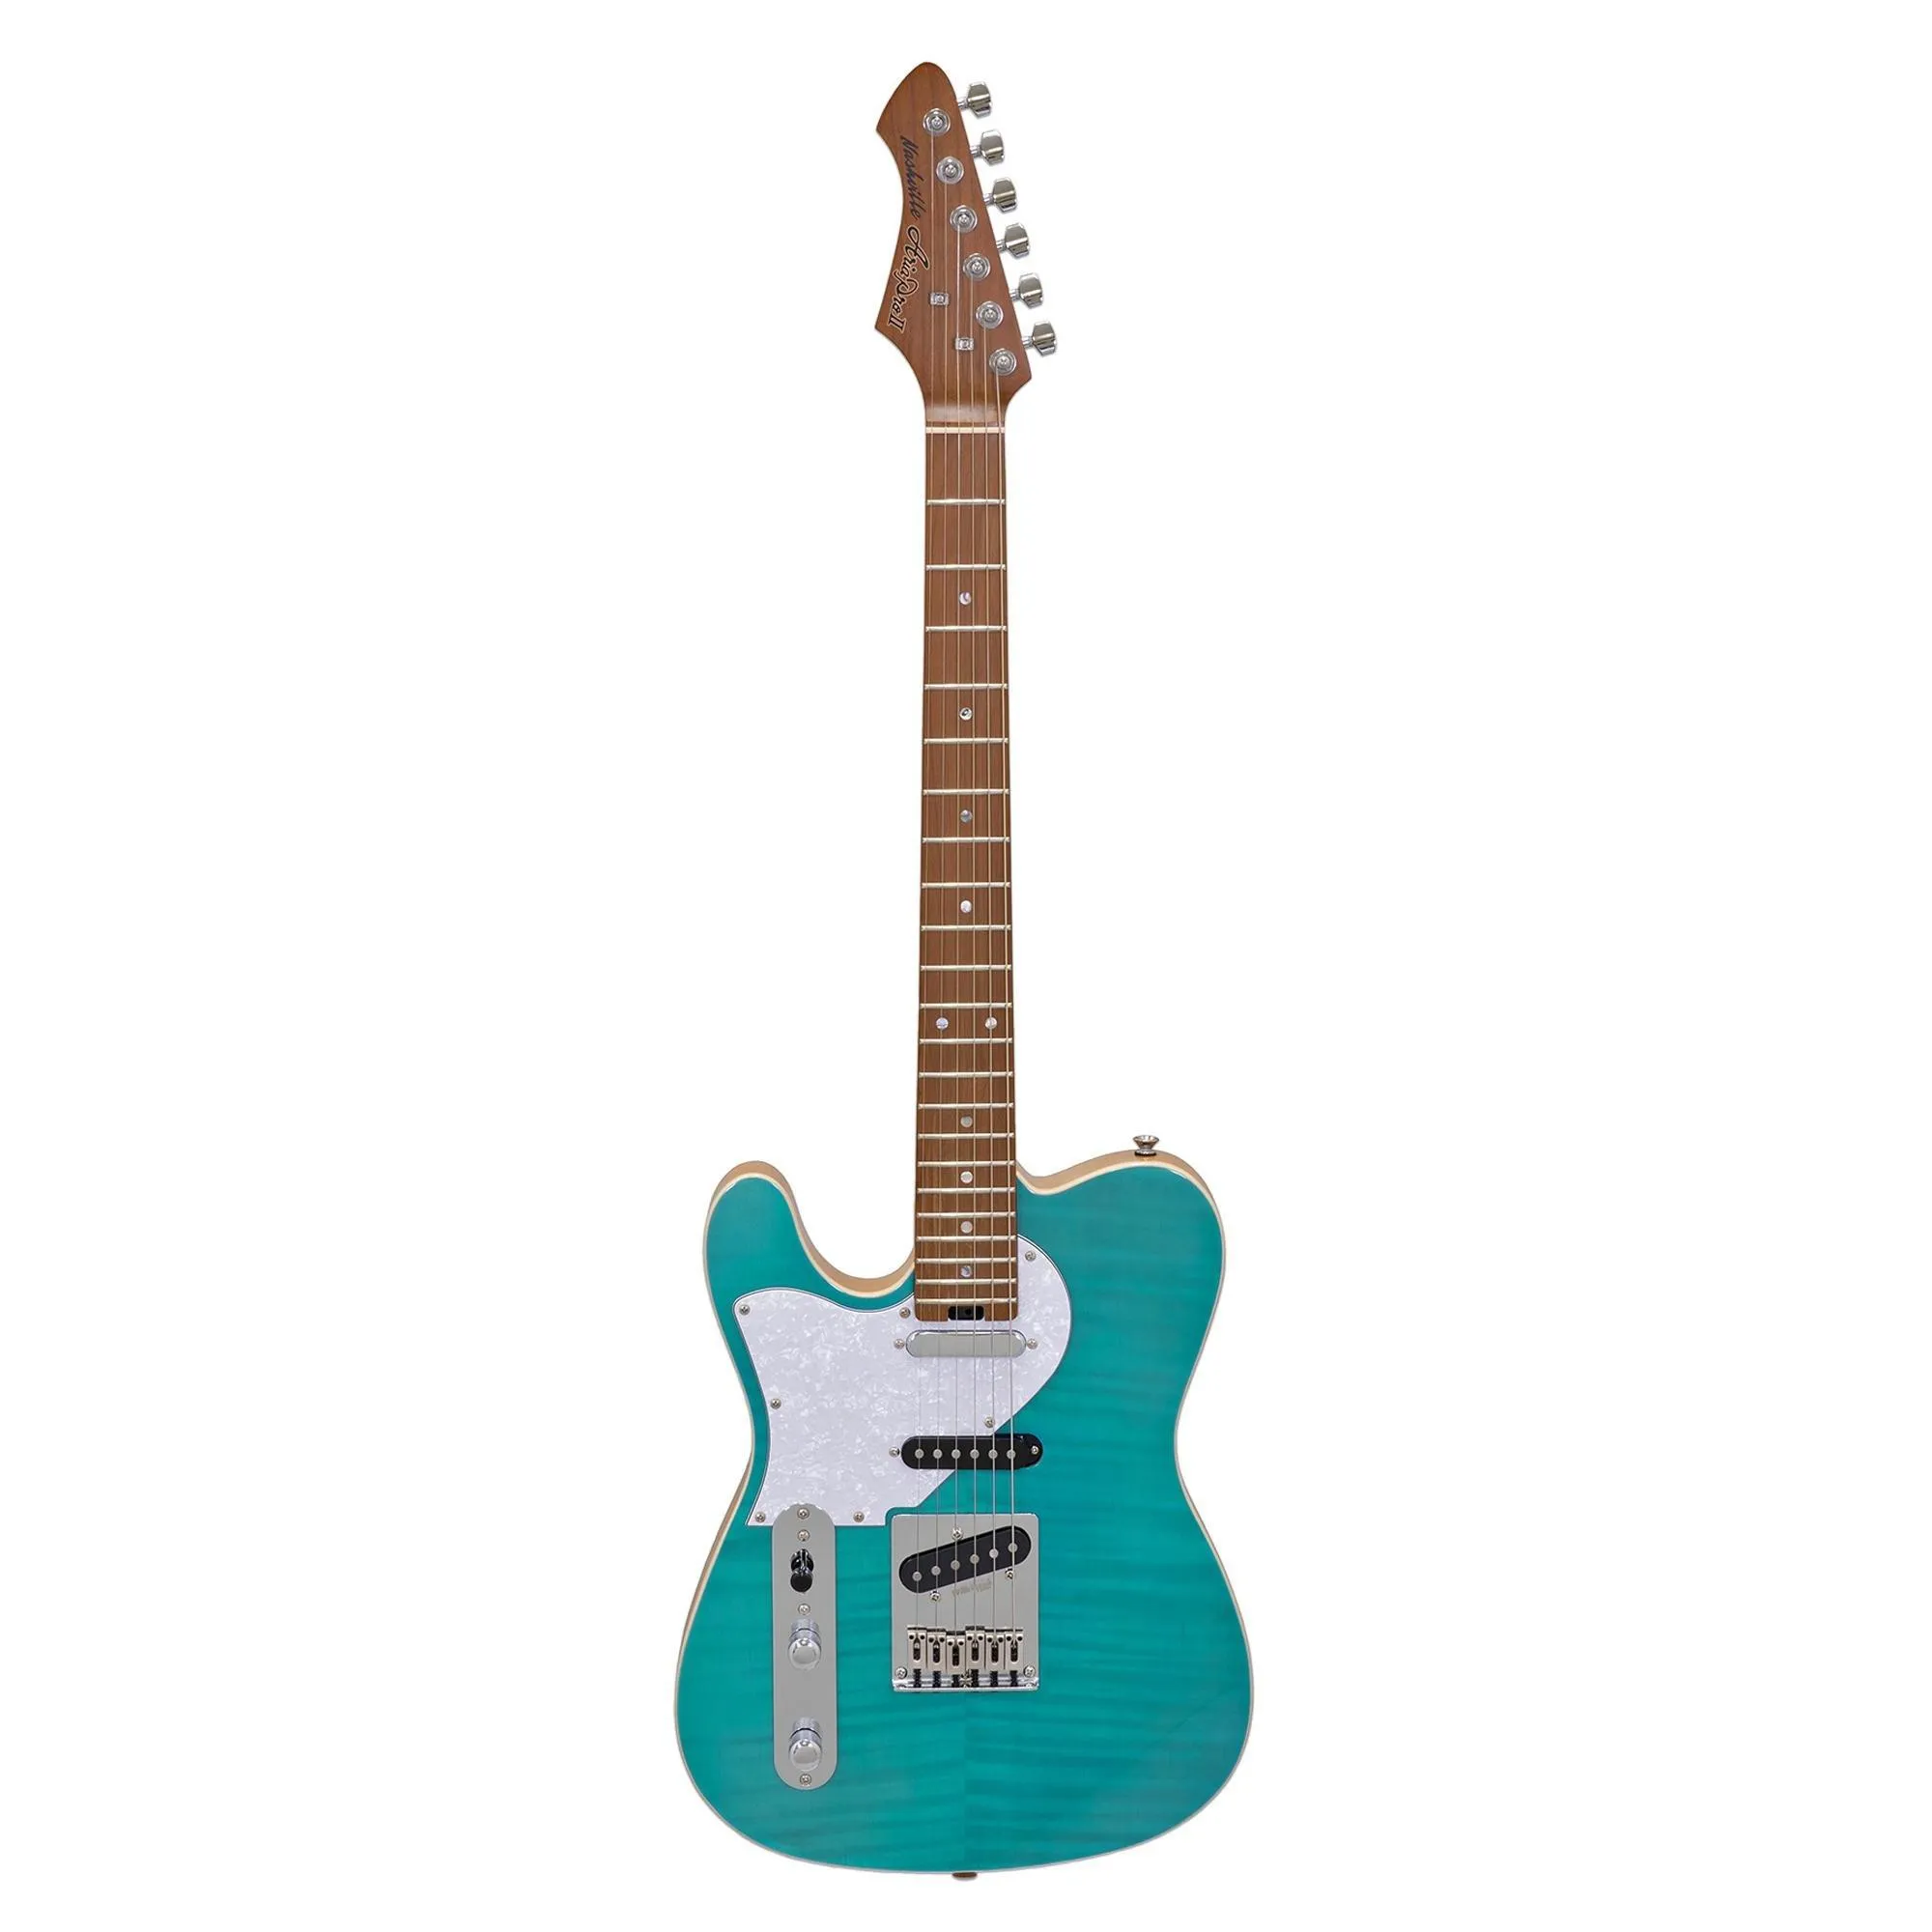 Guitarra Aria Pro II 615-MK2 LH Turqoise Blue (canhoto) por 3.226,00 à vista no boleto/pix ou parcele em até 12x sem juros. Compre na loja Mundomax!